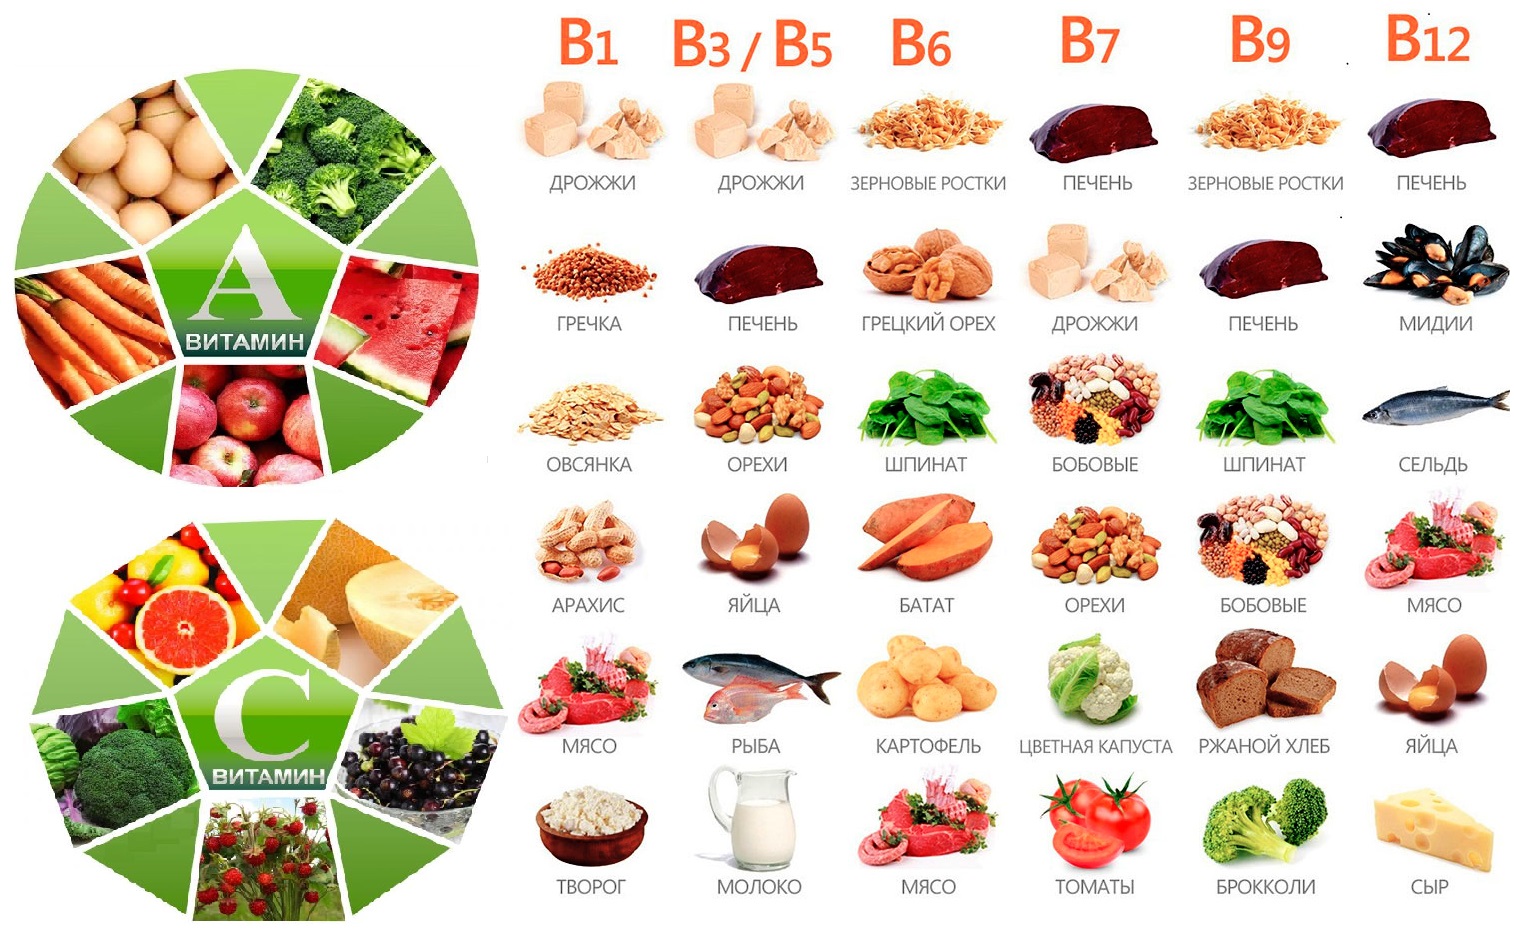 Продукты б п. Продукты содержащие витамин b. Витамин b в каких продуктах содержится больше. Витамины группы в в продуктах. Продукты с витамином б.